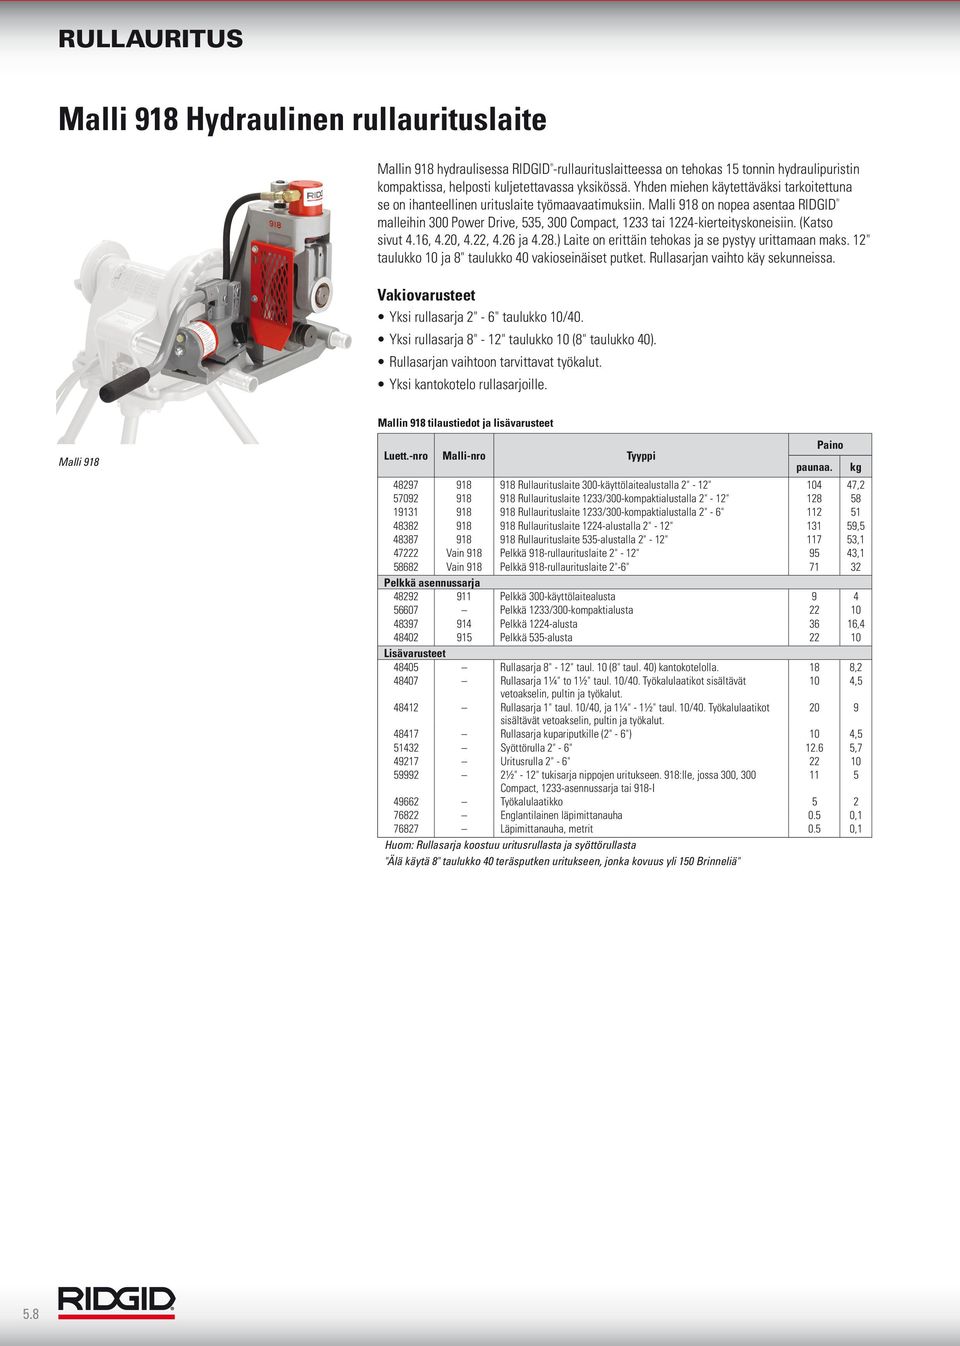 Malli 918 on nopea asentaa RIDGID malleihin 300 Power Drive, 535, 300 Compact, 1233 tai 1224-kierteityskoneisiin. (Katso sivut 4.16, 4.20, 4.22, 4.26 ja 4.28.